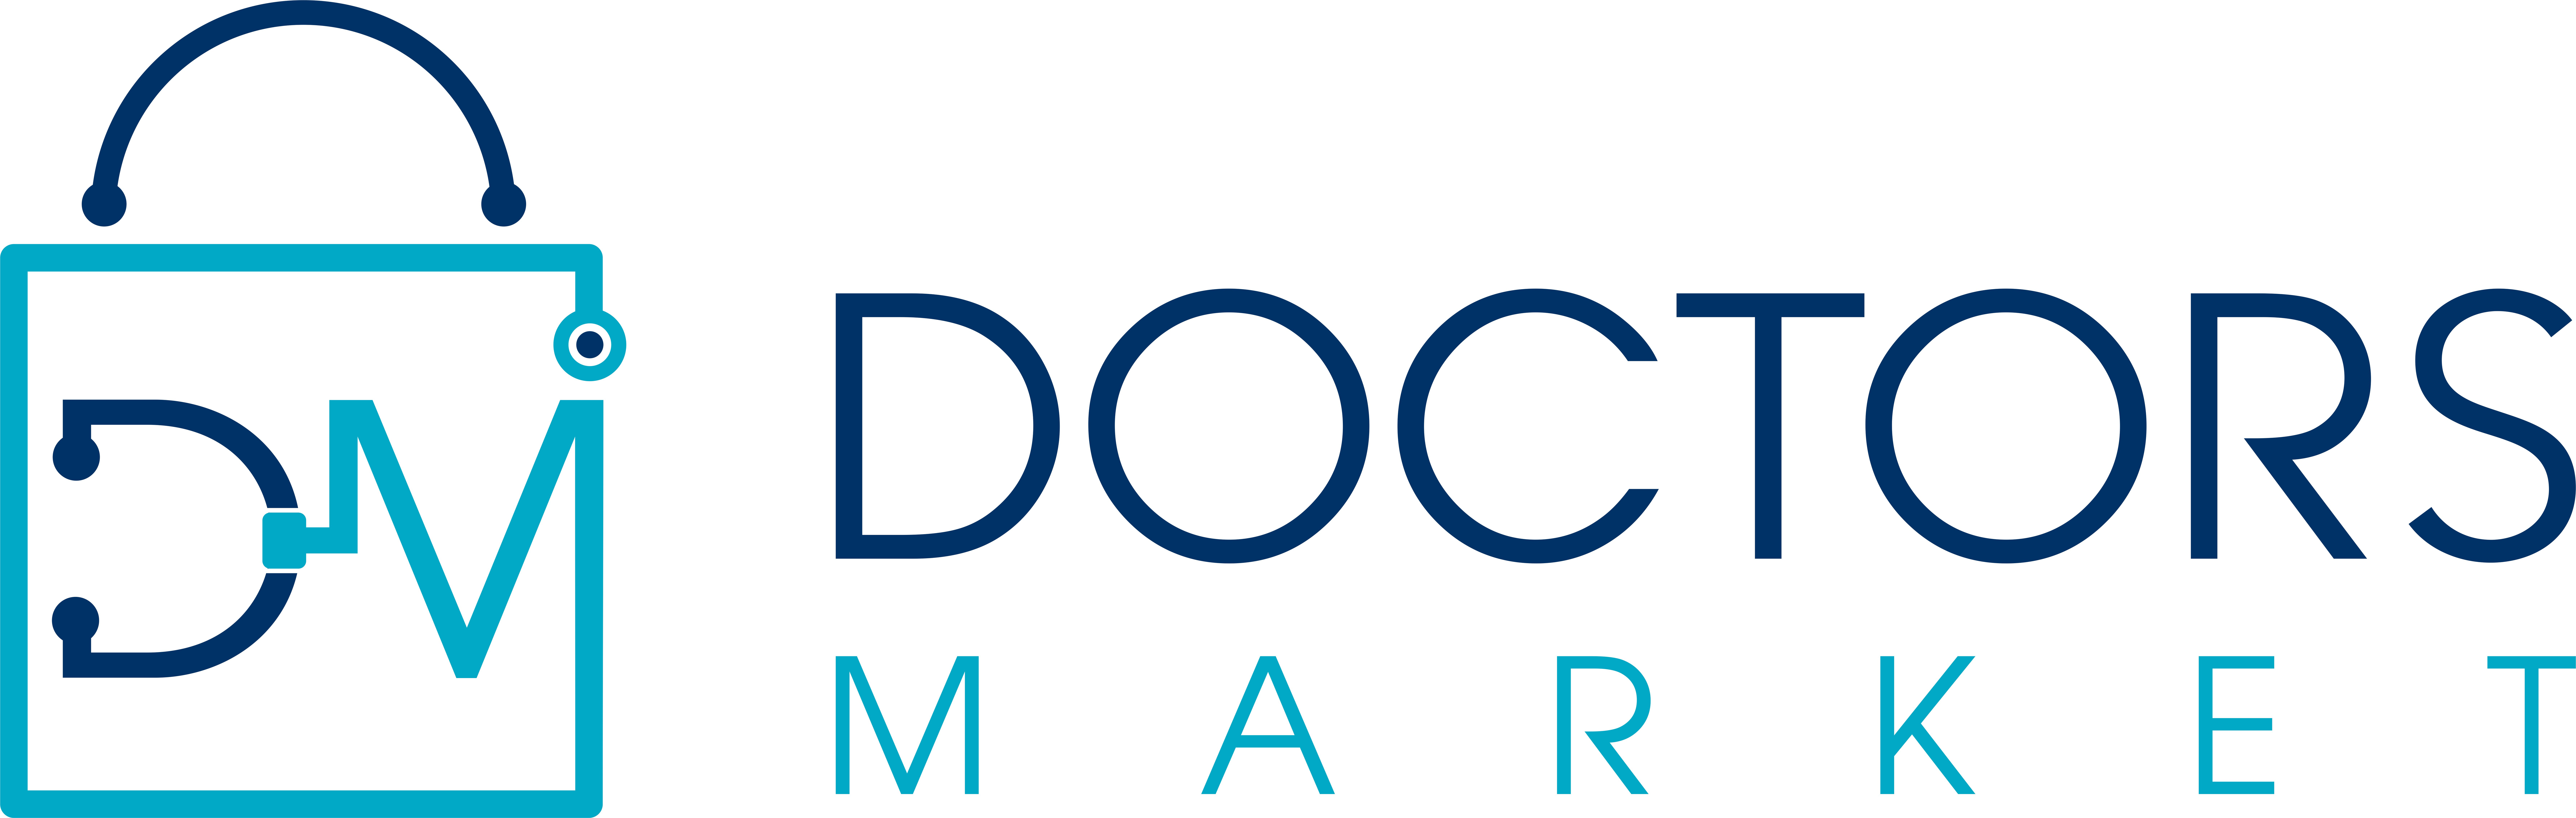 Doctors Market